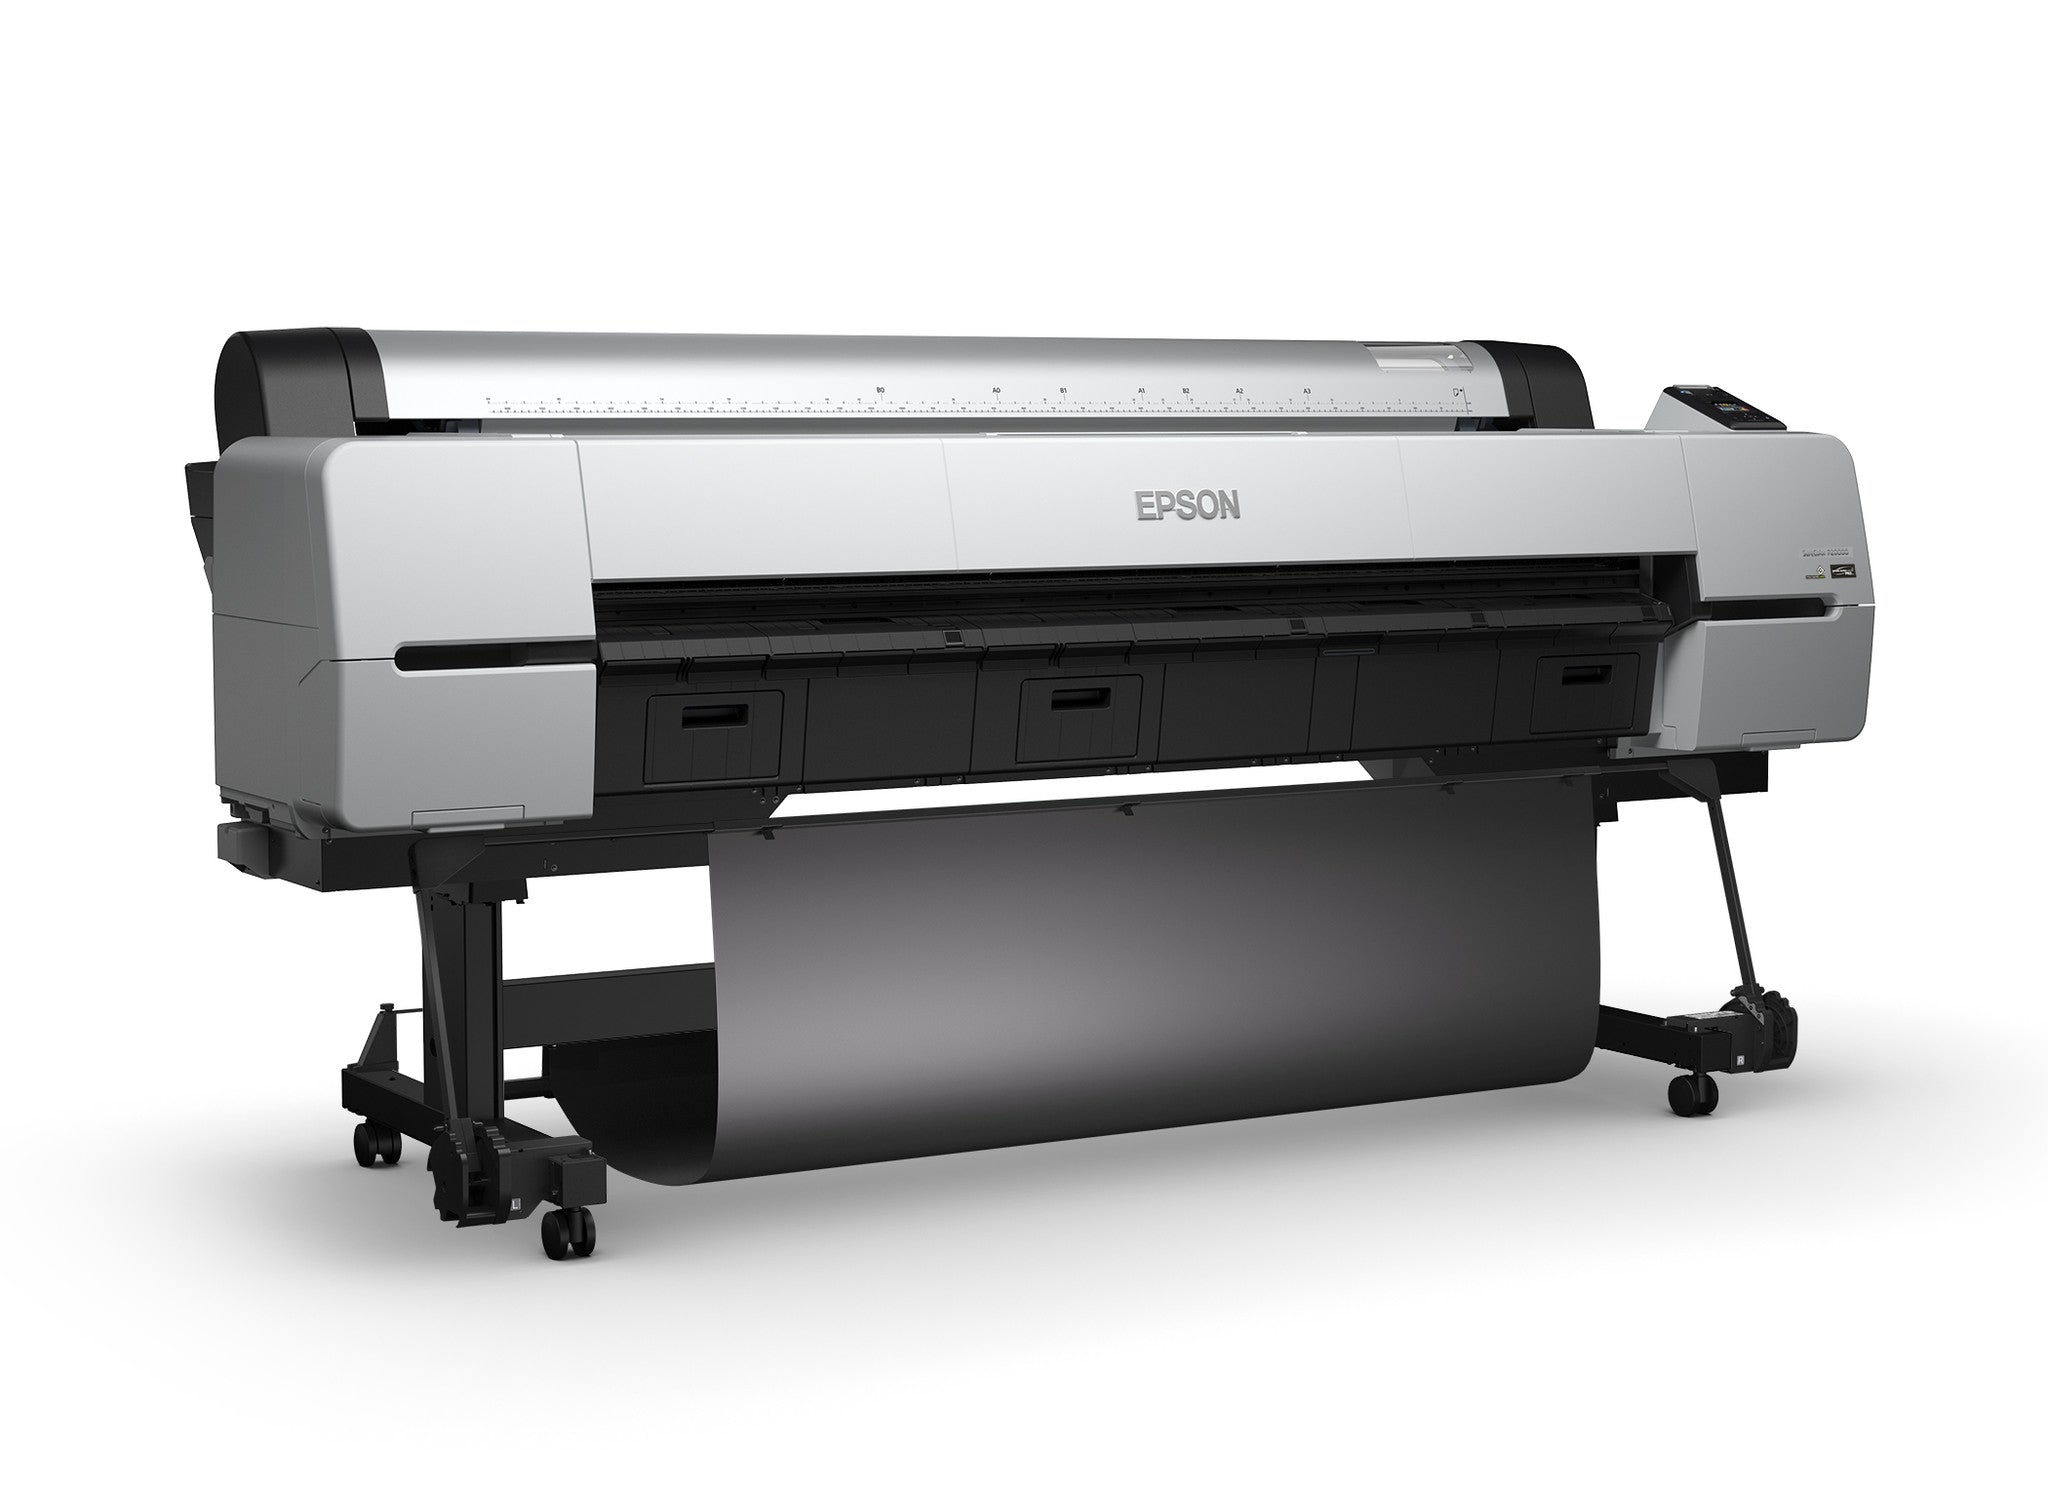 Epson SureColor P20000 64” Wide Format Printer, printers large format, Epson - Pictureline  - 1